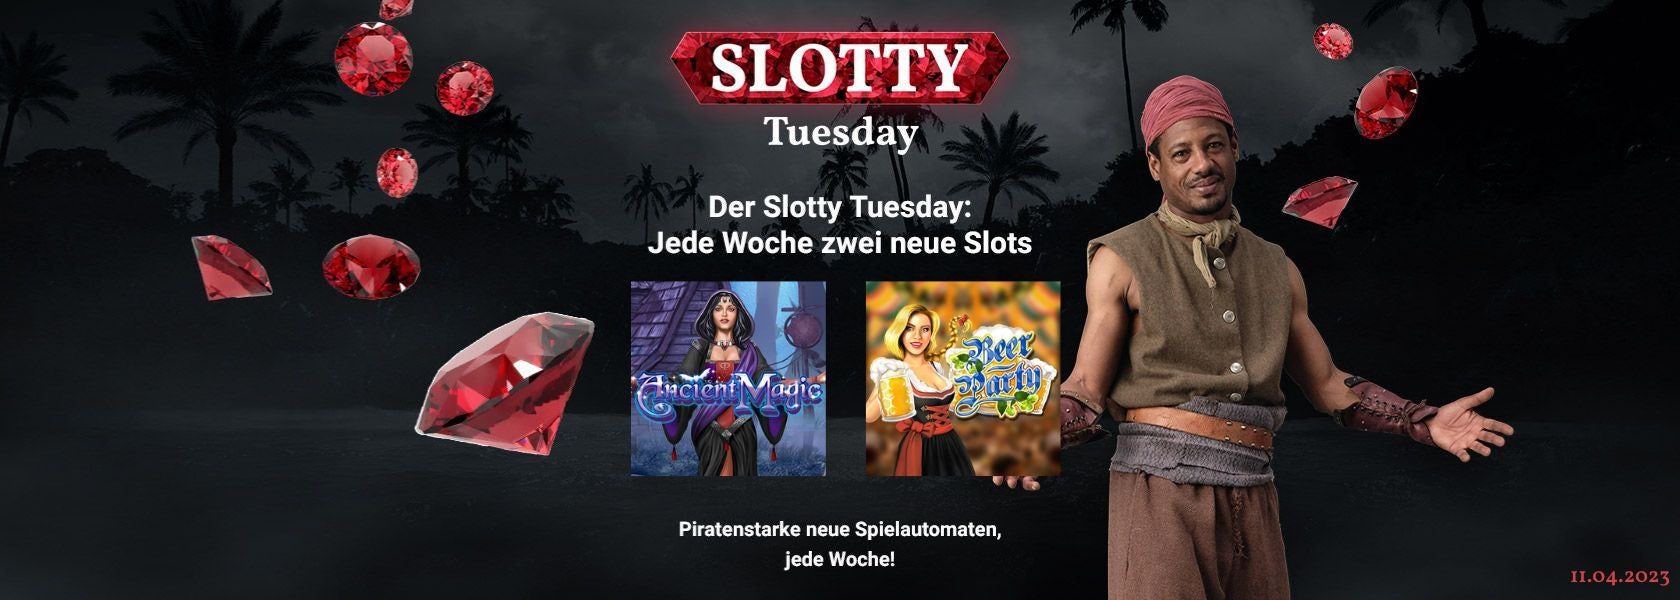 JPI-Header-Slotty-Tuesday-1104(1)